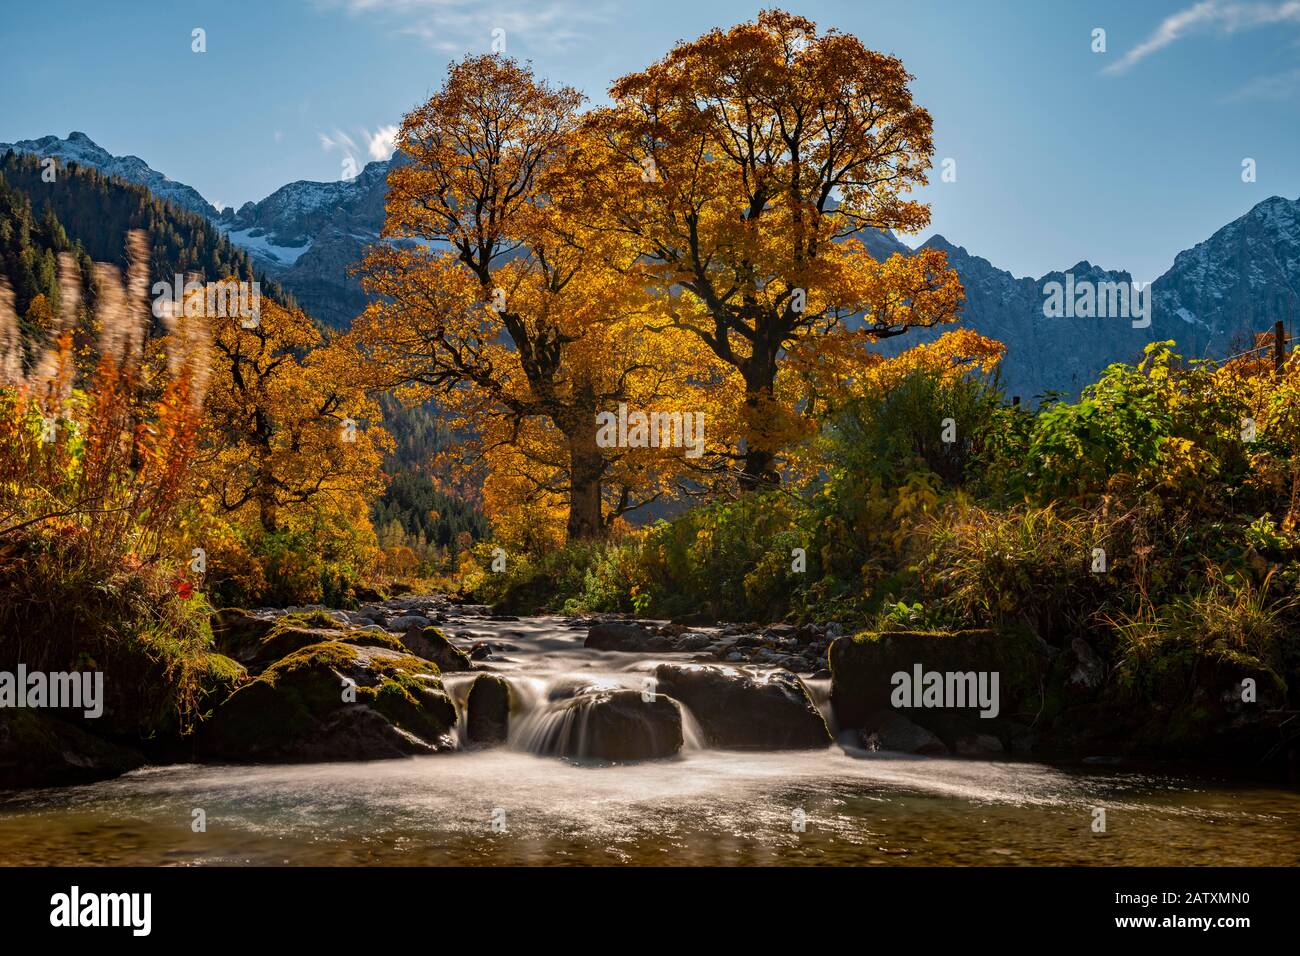 Érable d'automne (Acer) en contre-jour avec petit ruisseau de montagne, Ahornboden, Hinterriss, Autriche Banque D'Images